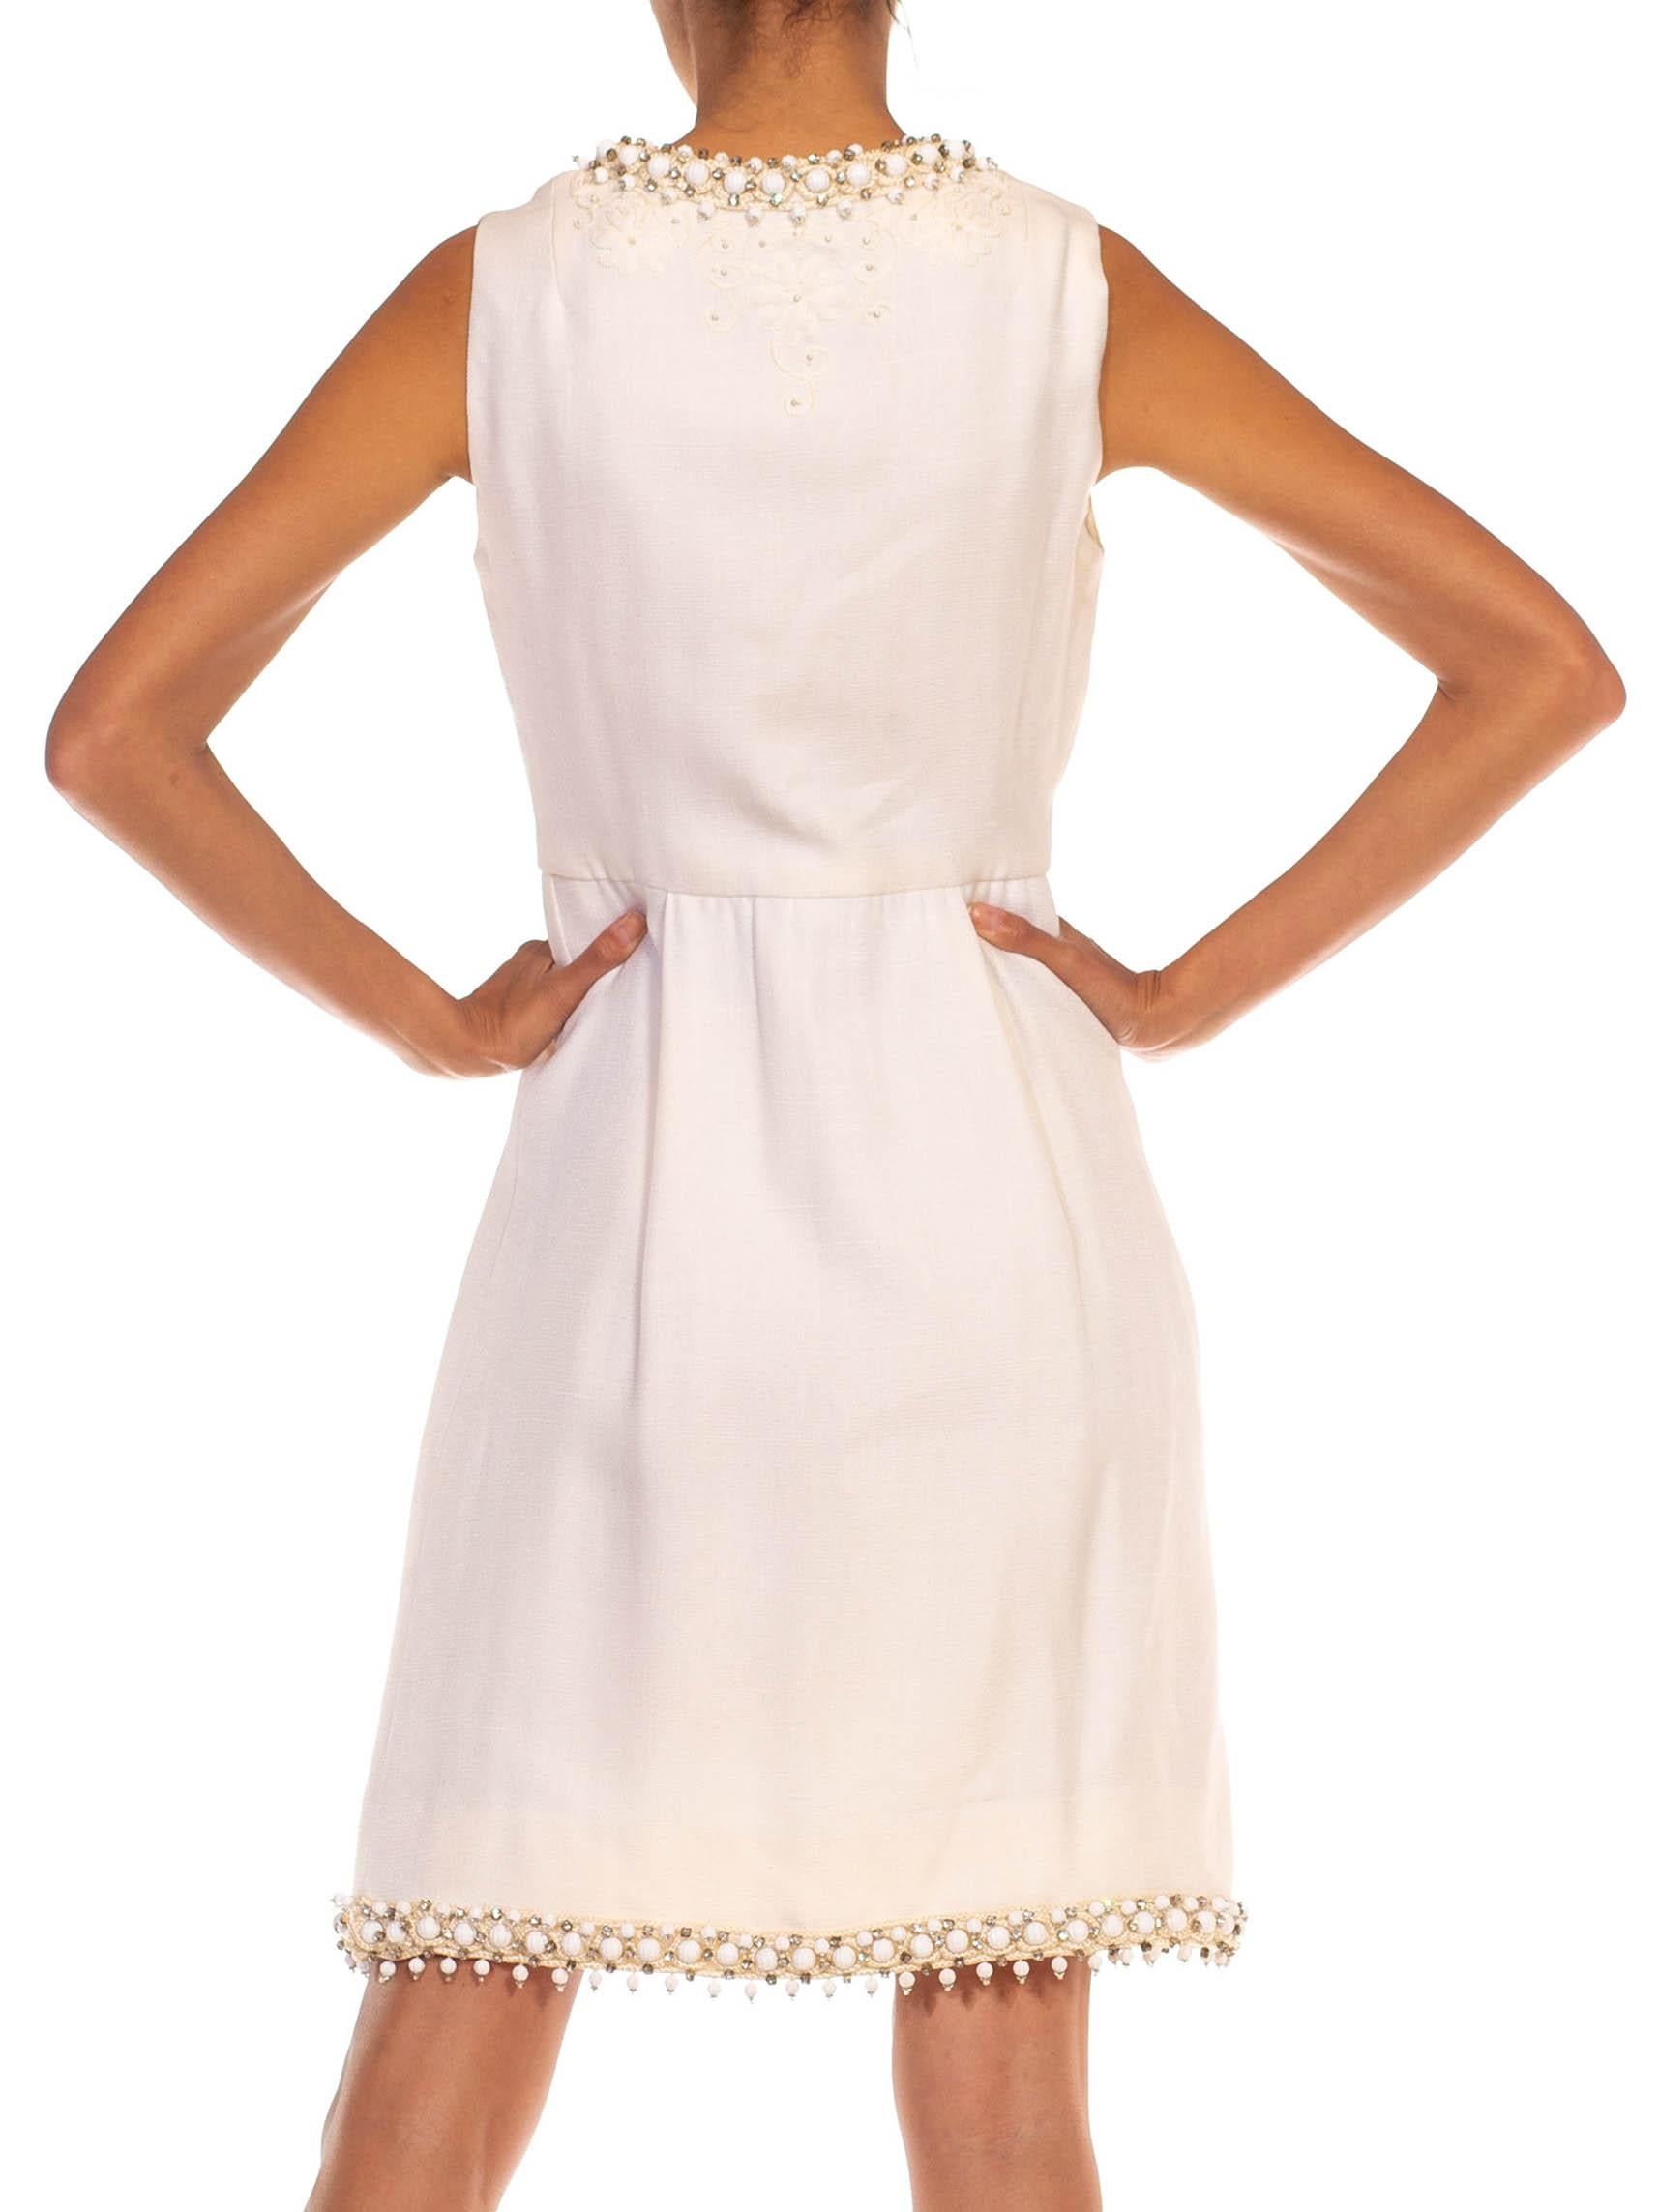 1960S OSCAR DE LA RENTA White Wool Blend Plunging V Neck Mod Dress With Crystals For Sale 5